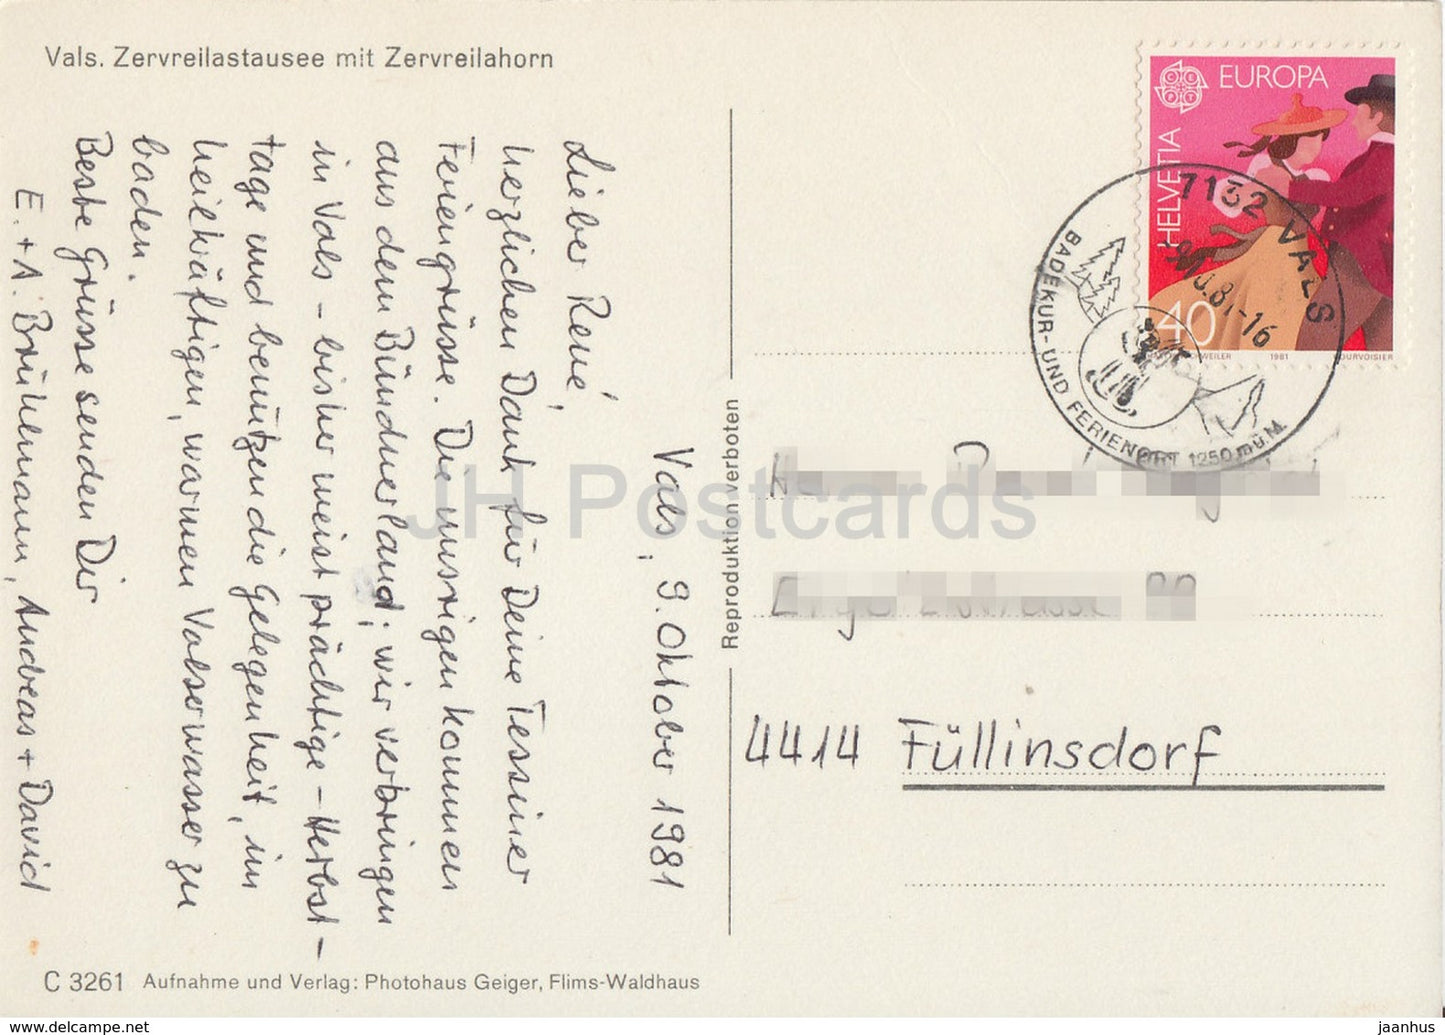 Vals - Zervreilastausee mit Zervreilahorn - 1981 - Switzerland - used